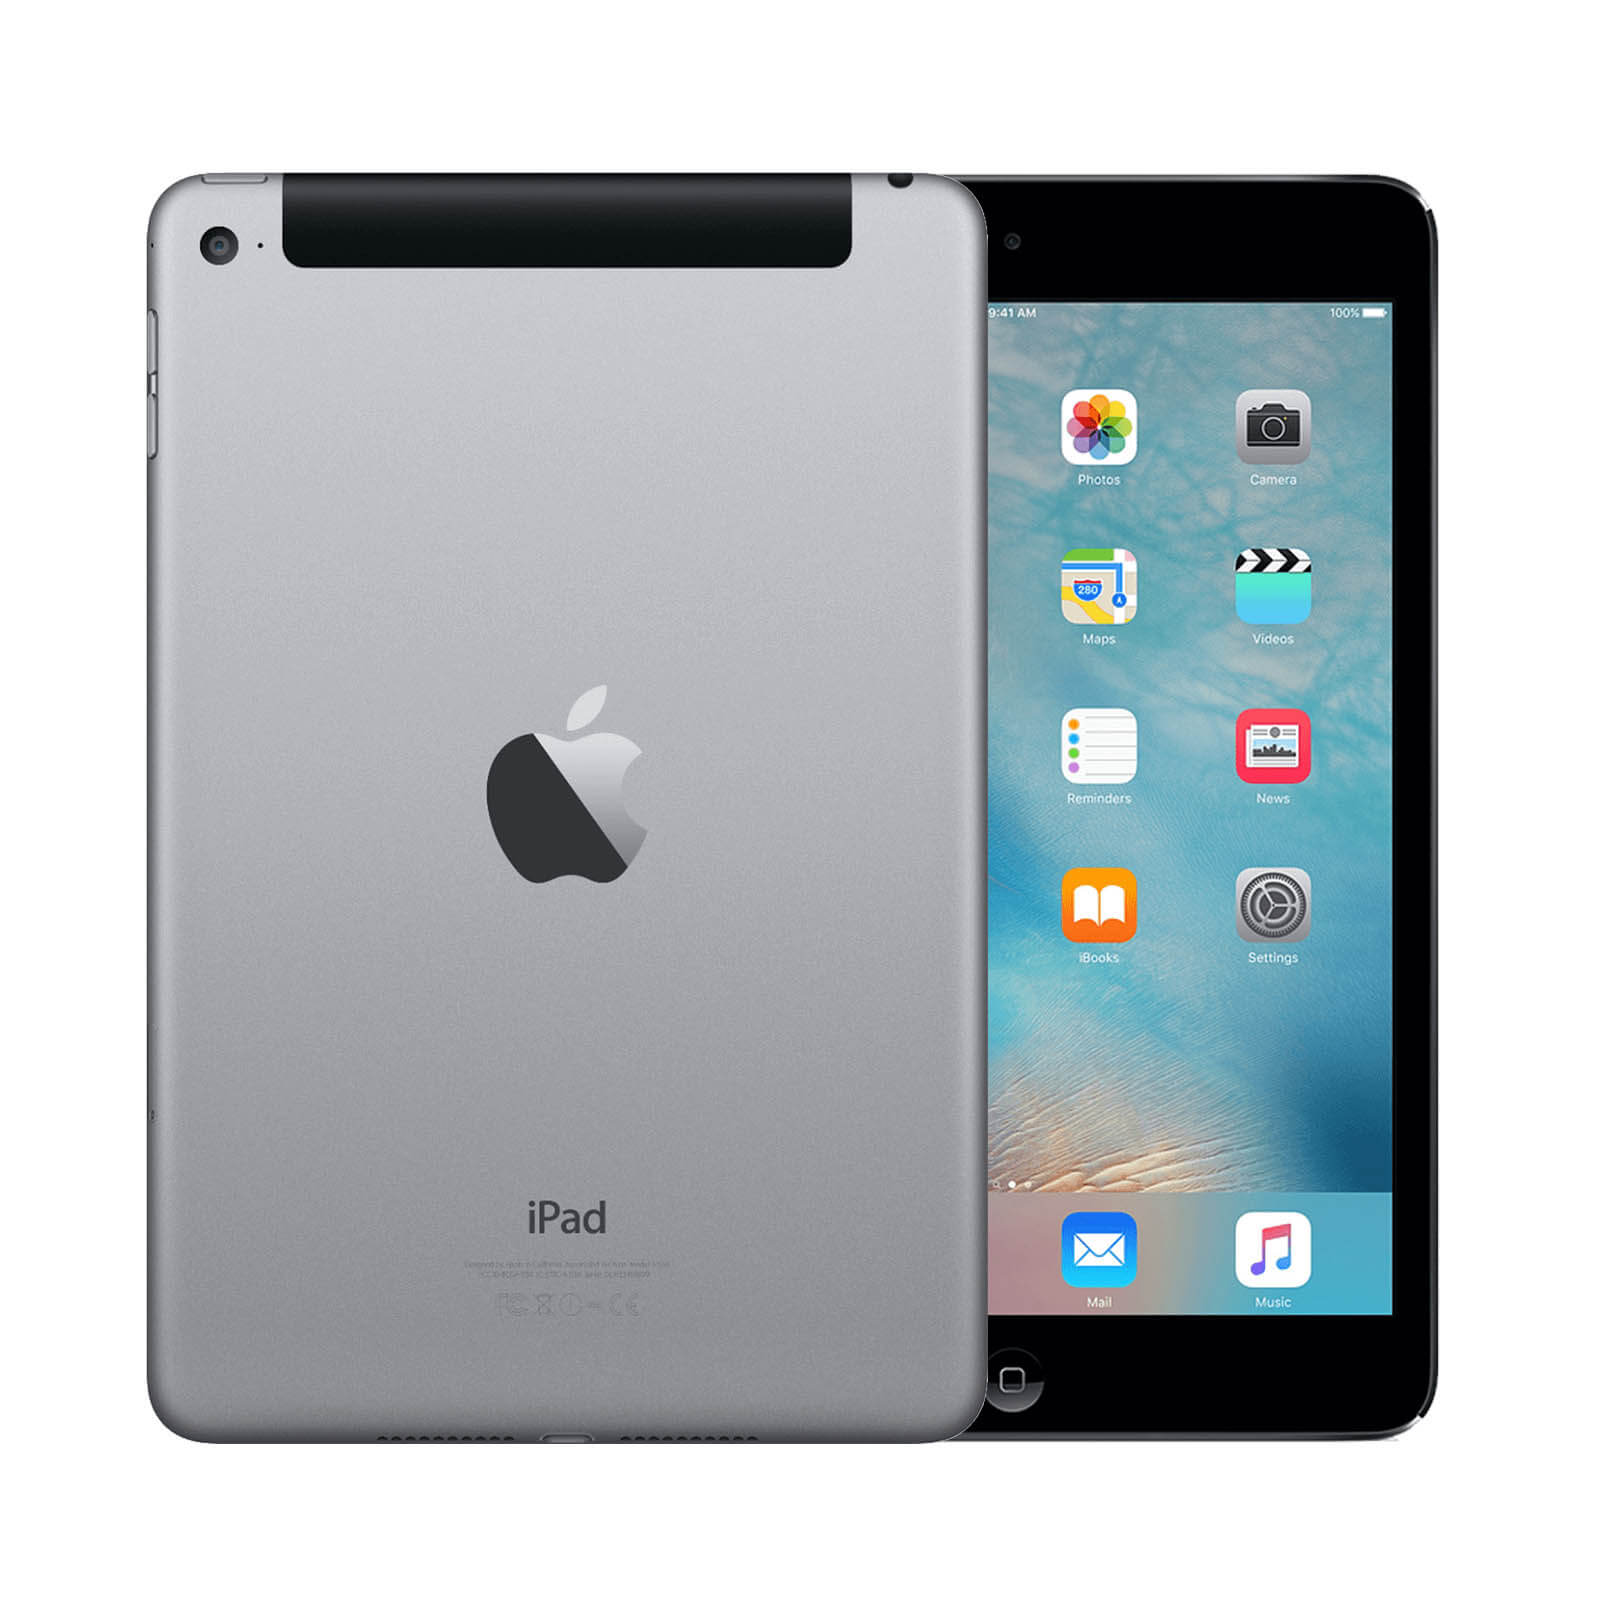 Apple iPad Mini 4 16GB Space Grey WiFi & Cellular - Very Good 16GB Space Grey Very Good